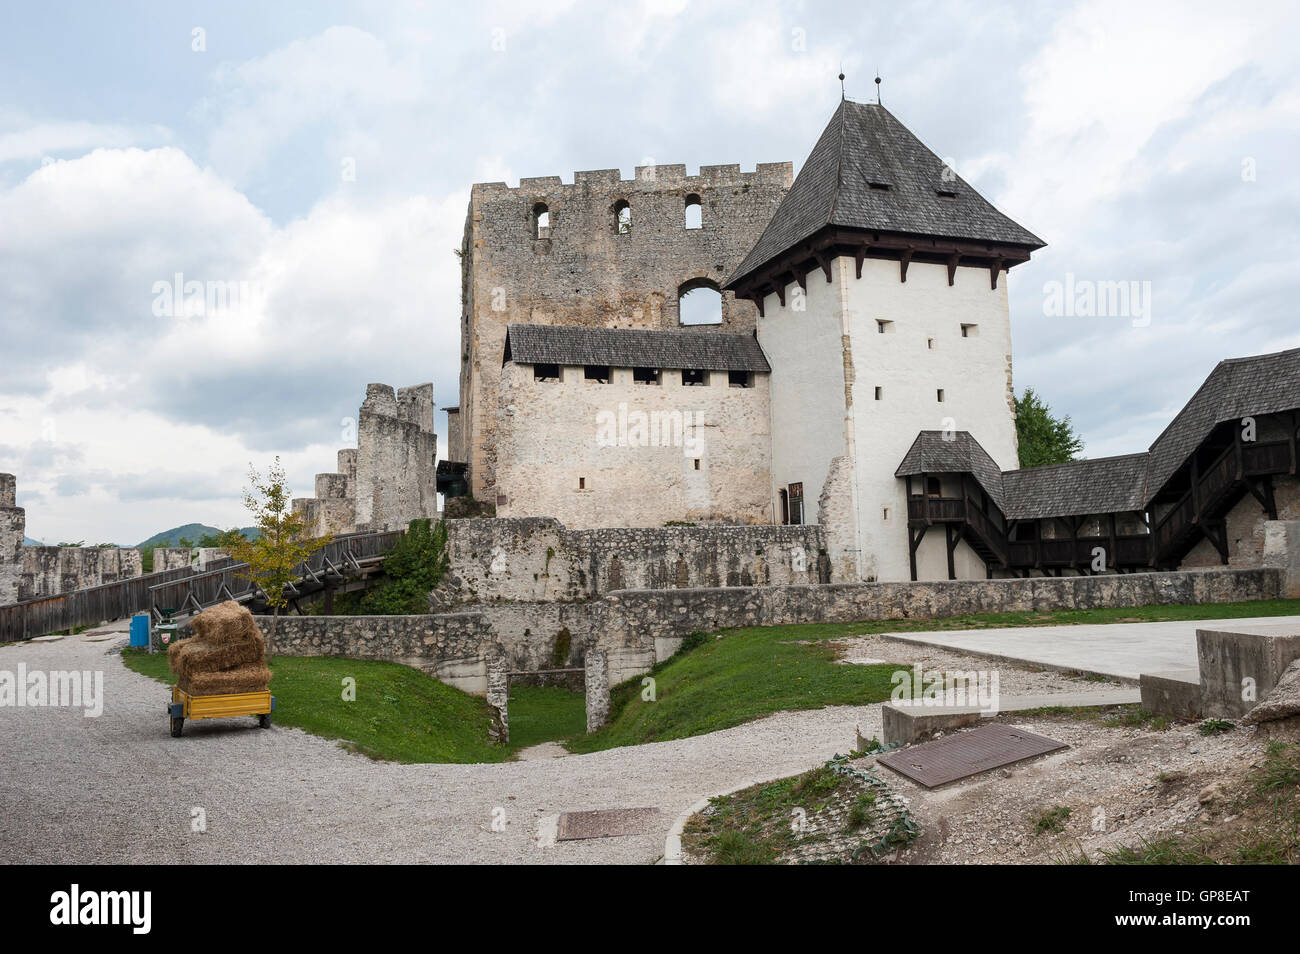 Celje Upper Castle, Celje, Styria region, Slovenia, Europe Stock Photo